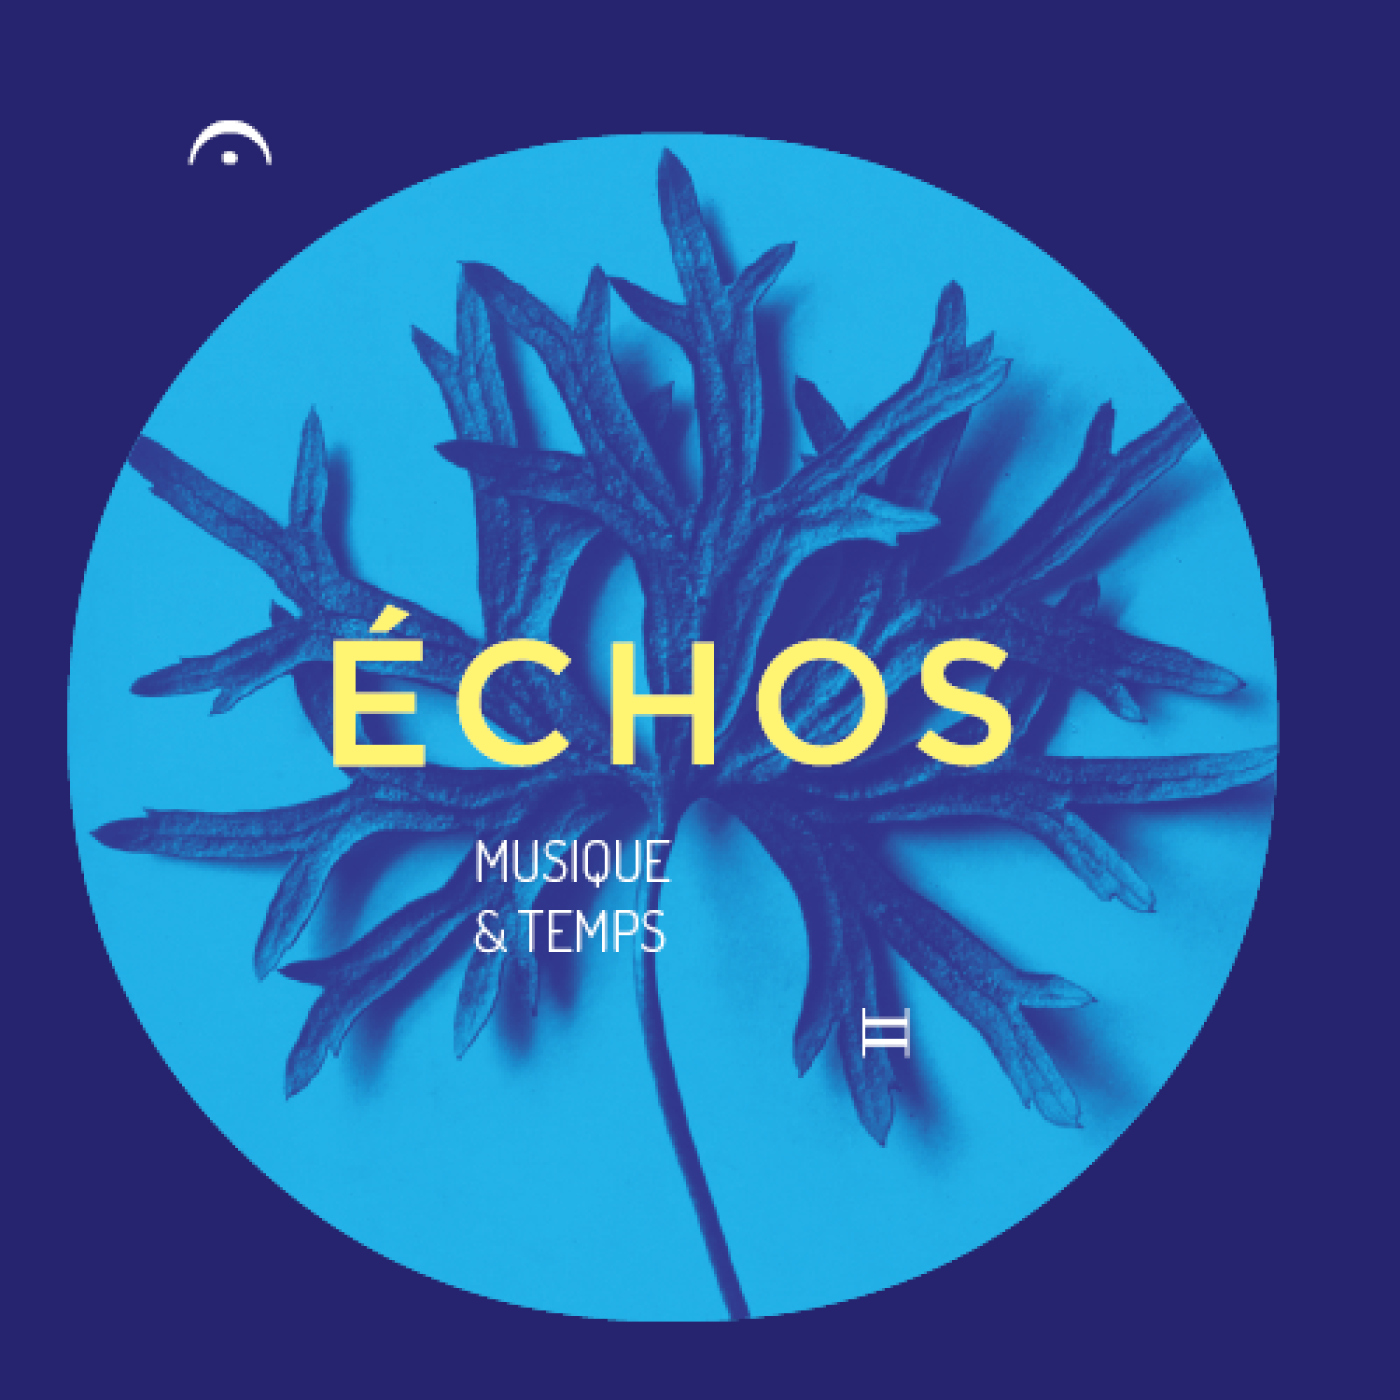 Echos : Musique & Temps - "Déplacements rythmiques"